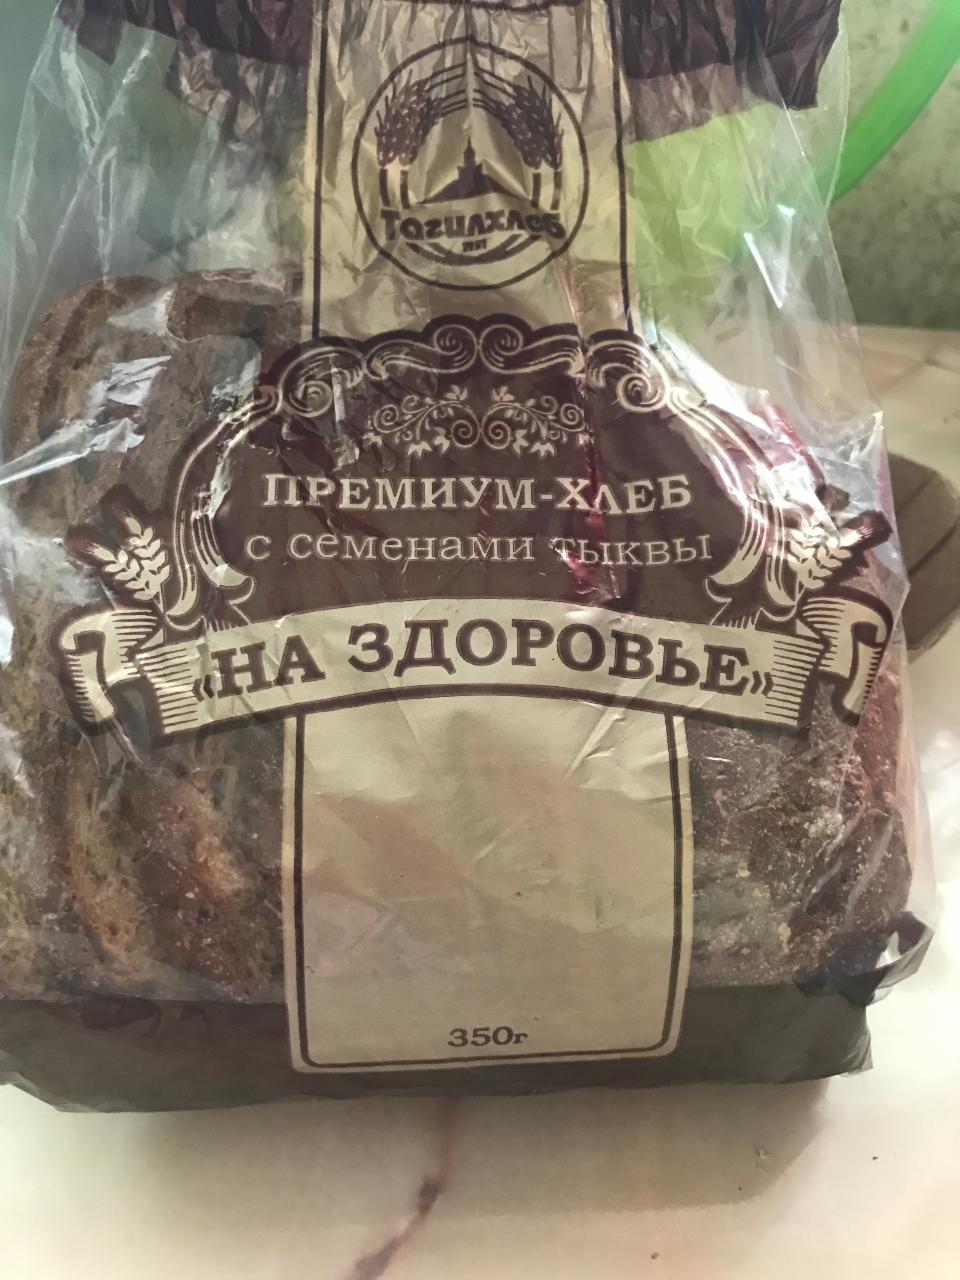 Фото - Премиум-хлеб с семенами тыквы На здоровье Тагил-хлеб